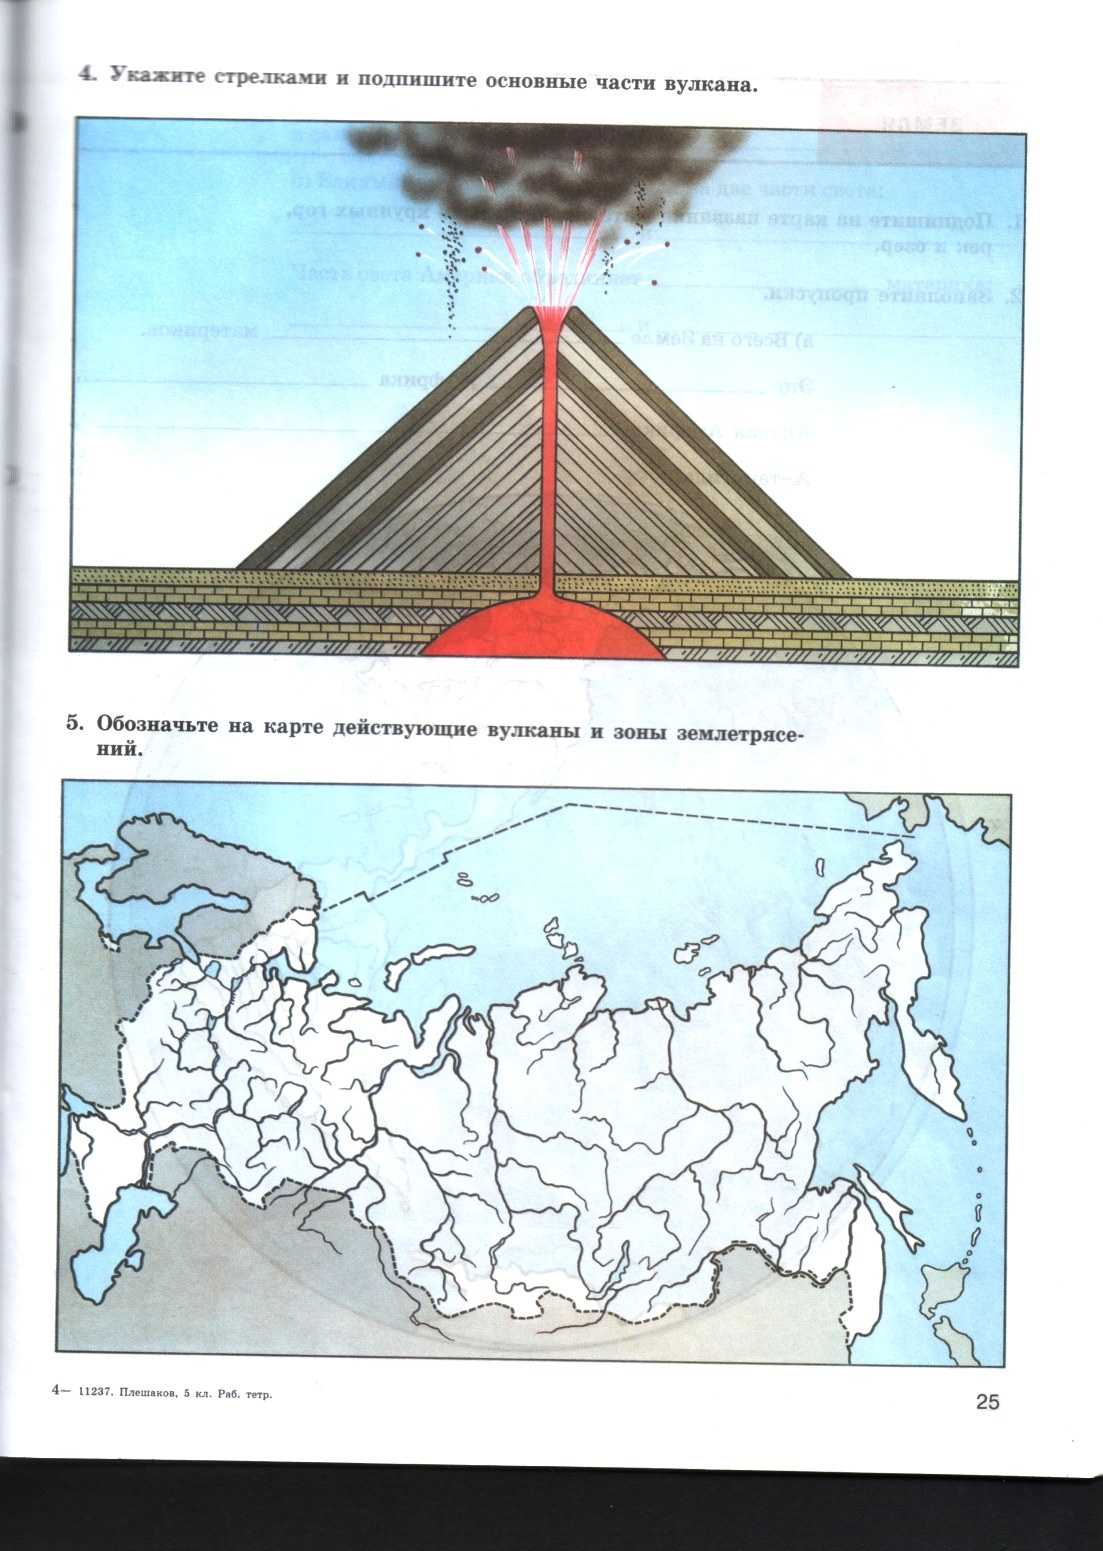 Вулканы контурные карты 6 класс. Ключевая сопка вулкан на карте России. Ключевая сопка вулкан на карте. Вулкан Ключевская сопка на карте. Укажите стрелками и подпишите основные части вулкана.